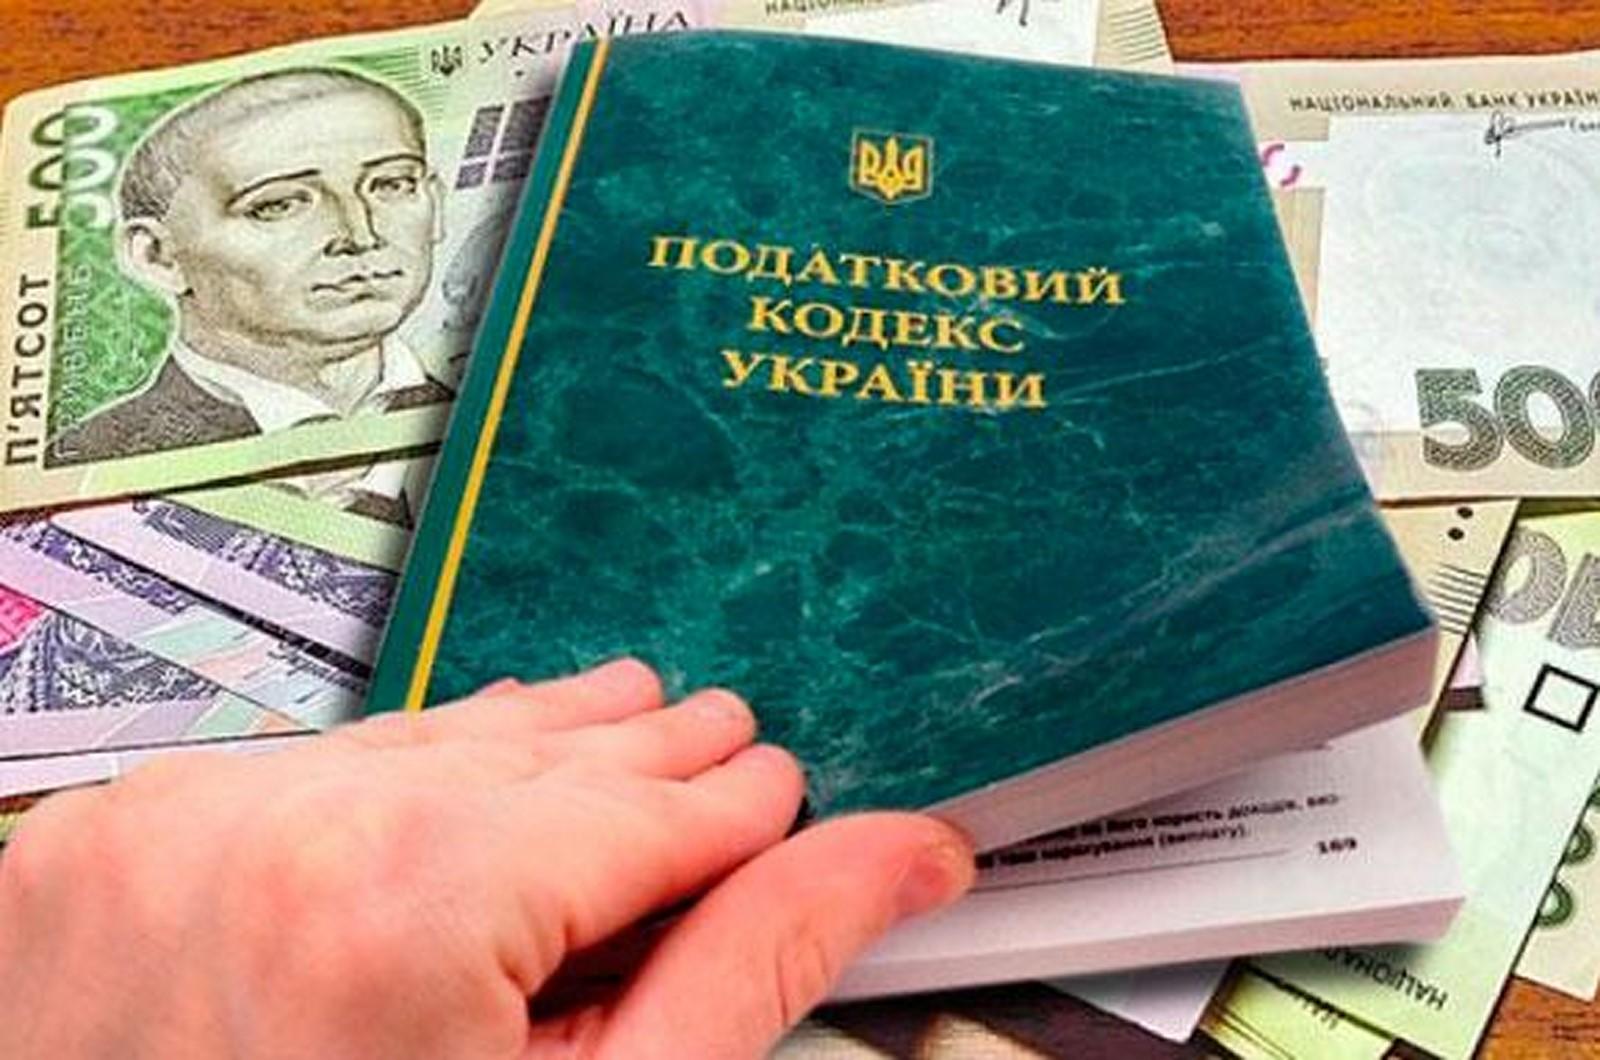 Уплата налогов в местные бюджеты на Киевщине за год выросла более чем на четверть